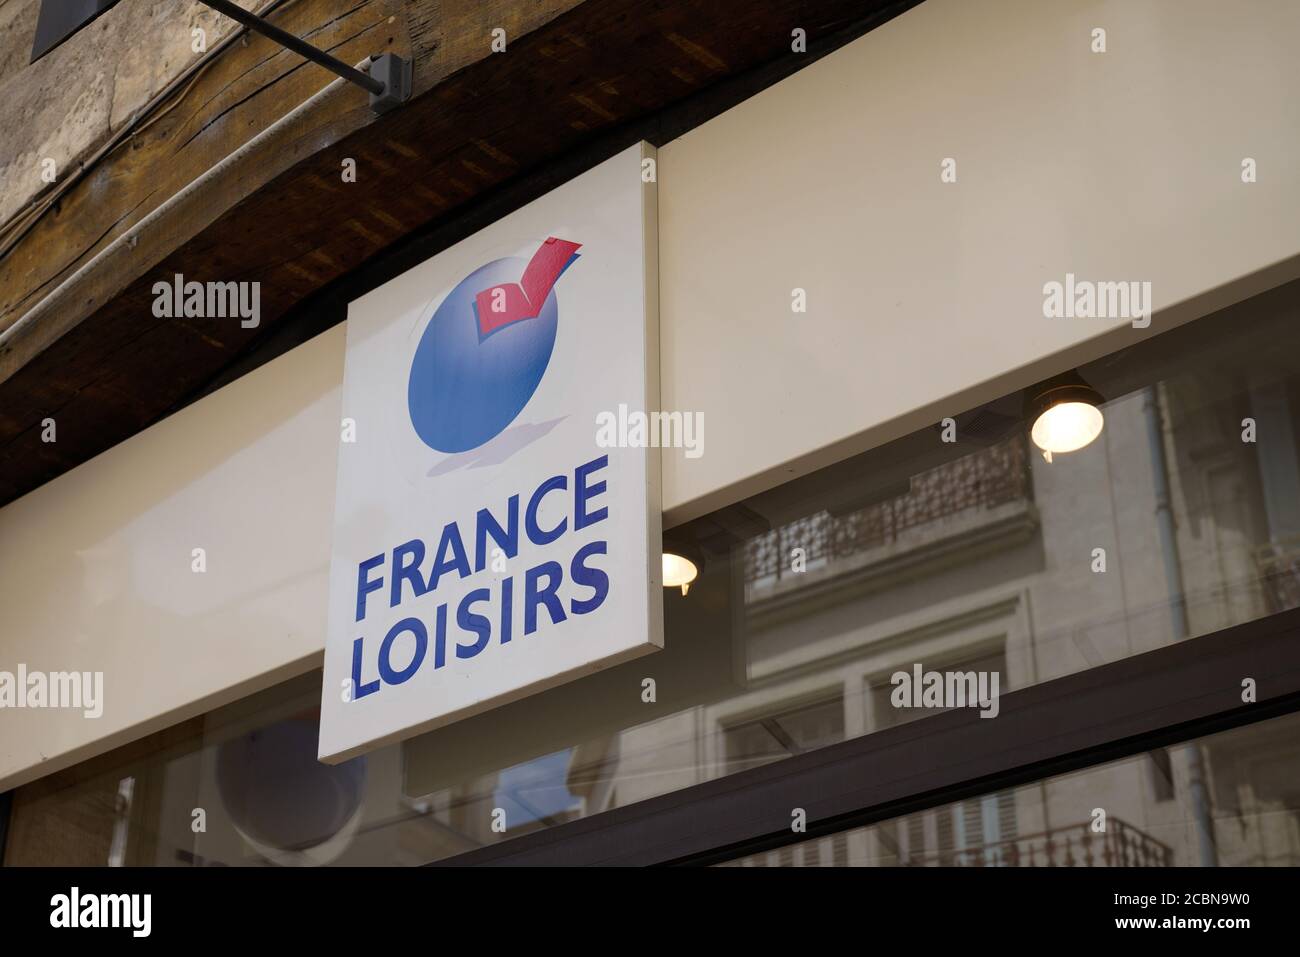 Bordeaux , Aquitaine / Francia - 08 10 2020 : francia logisirs logo e testo del segno di libreria negozio di facciata edificio negozio Foto Stock